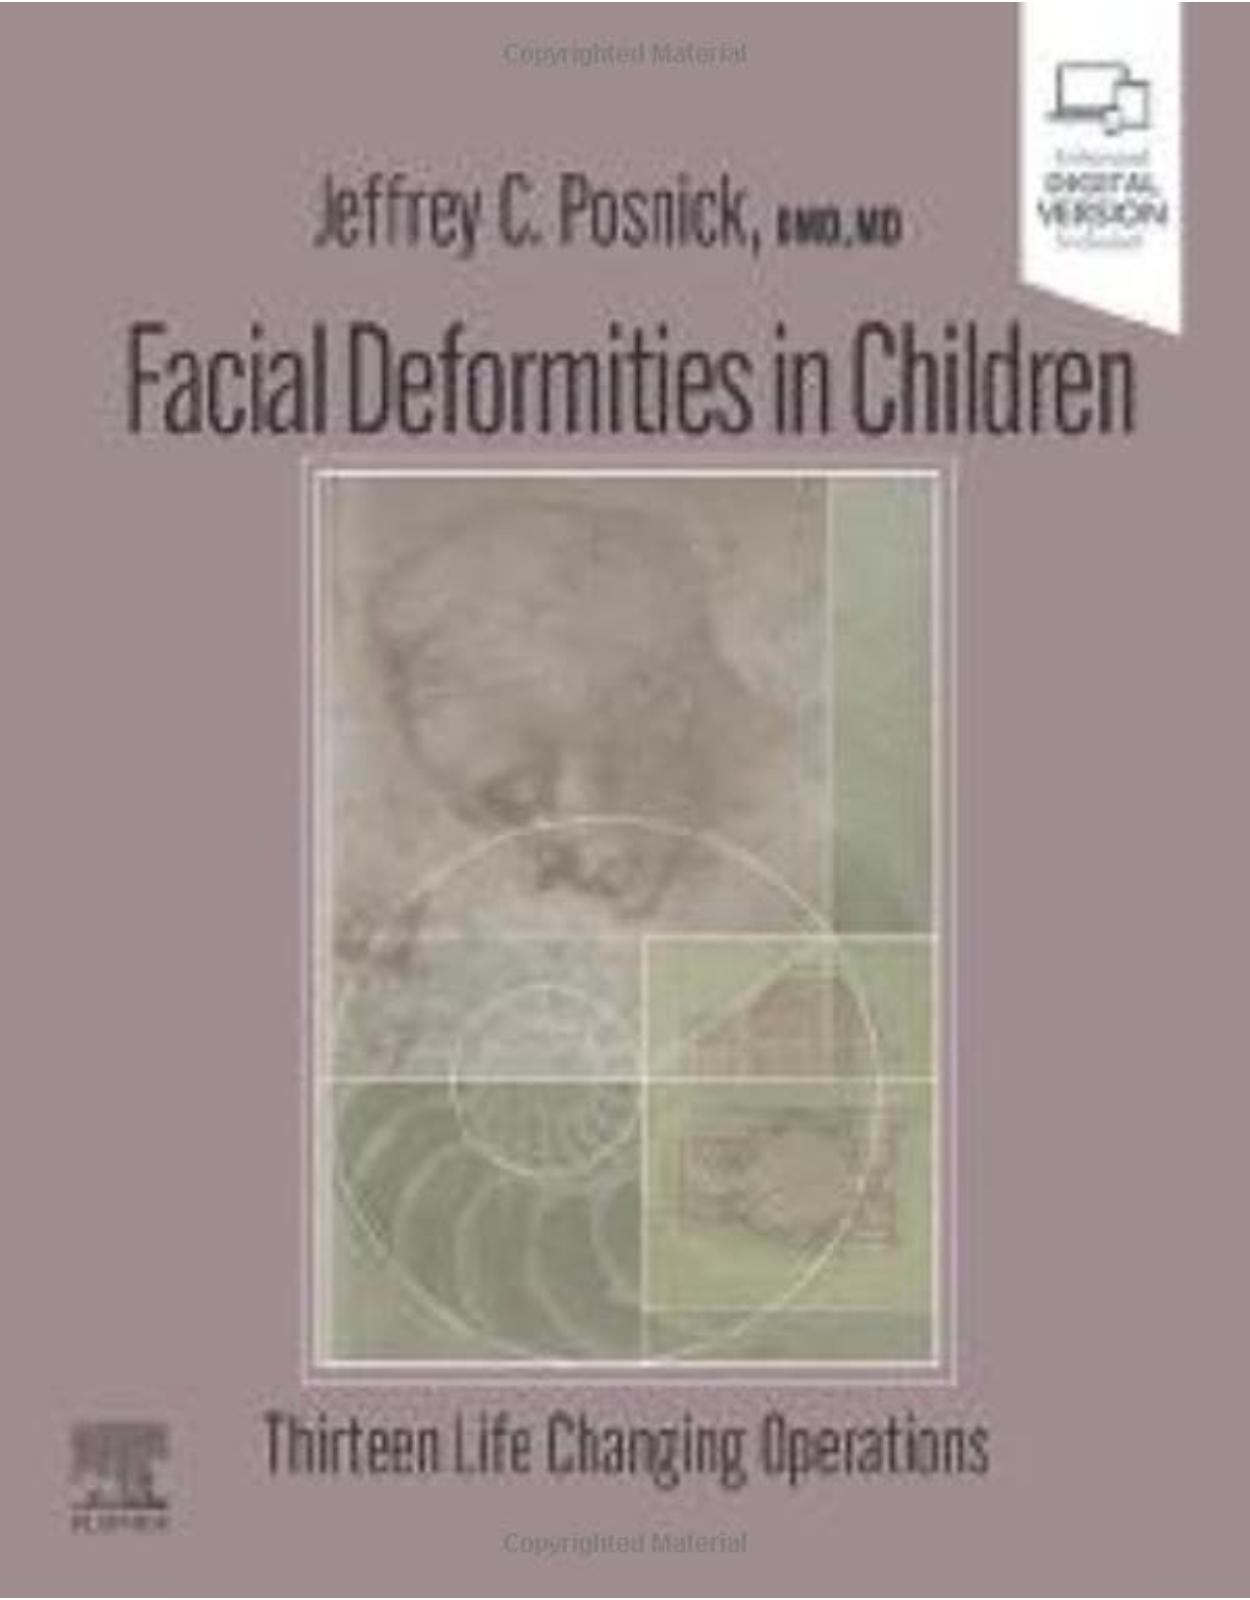 Facial Deformities in Children: Thirteen Life Changing Operations